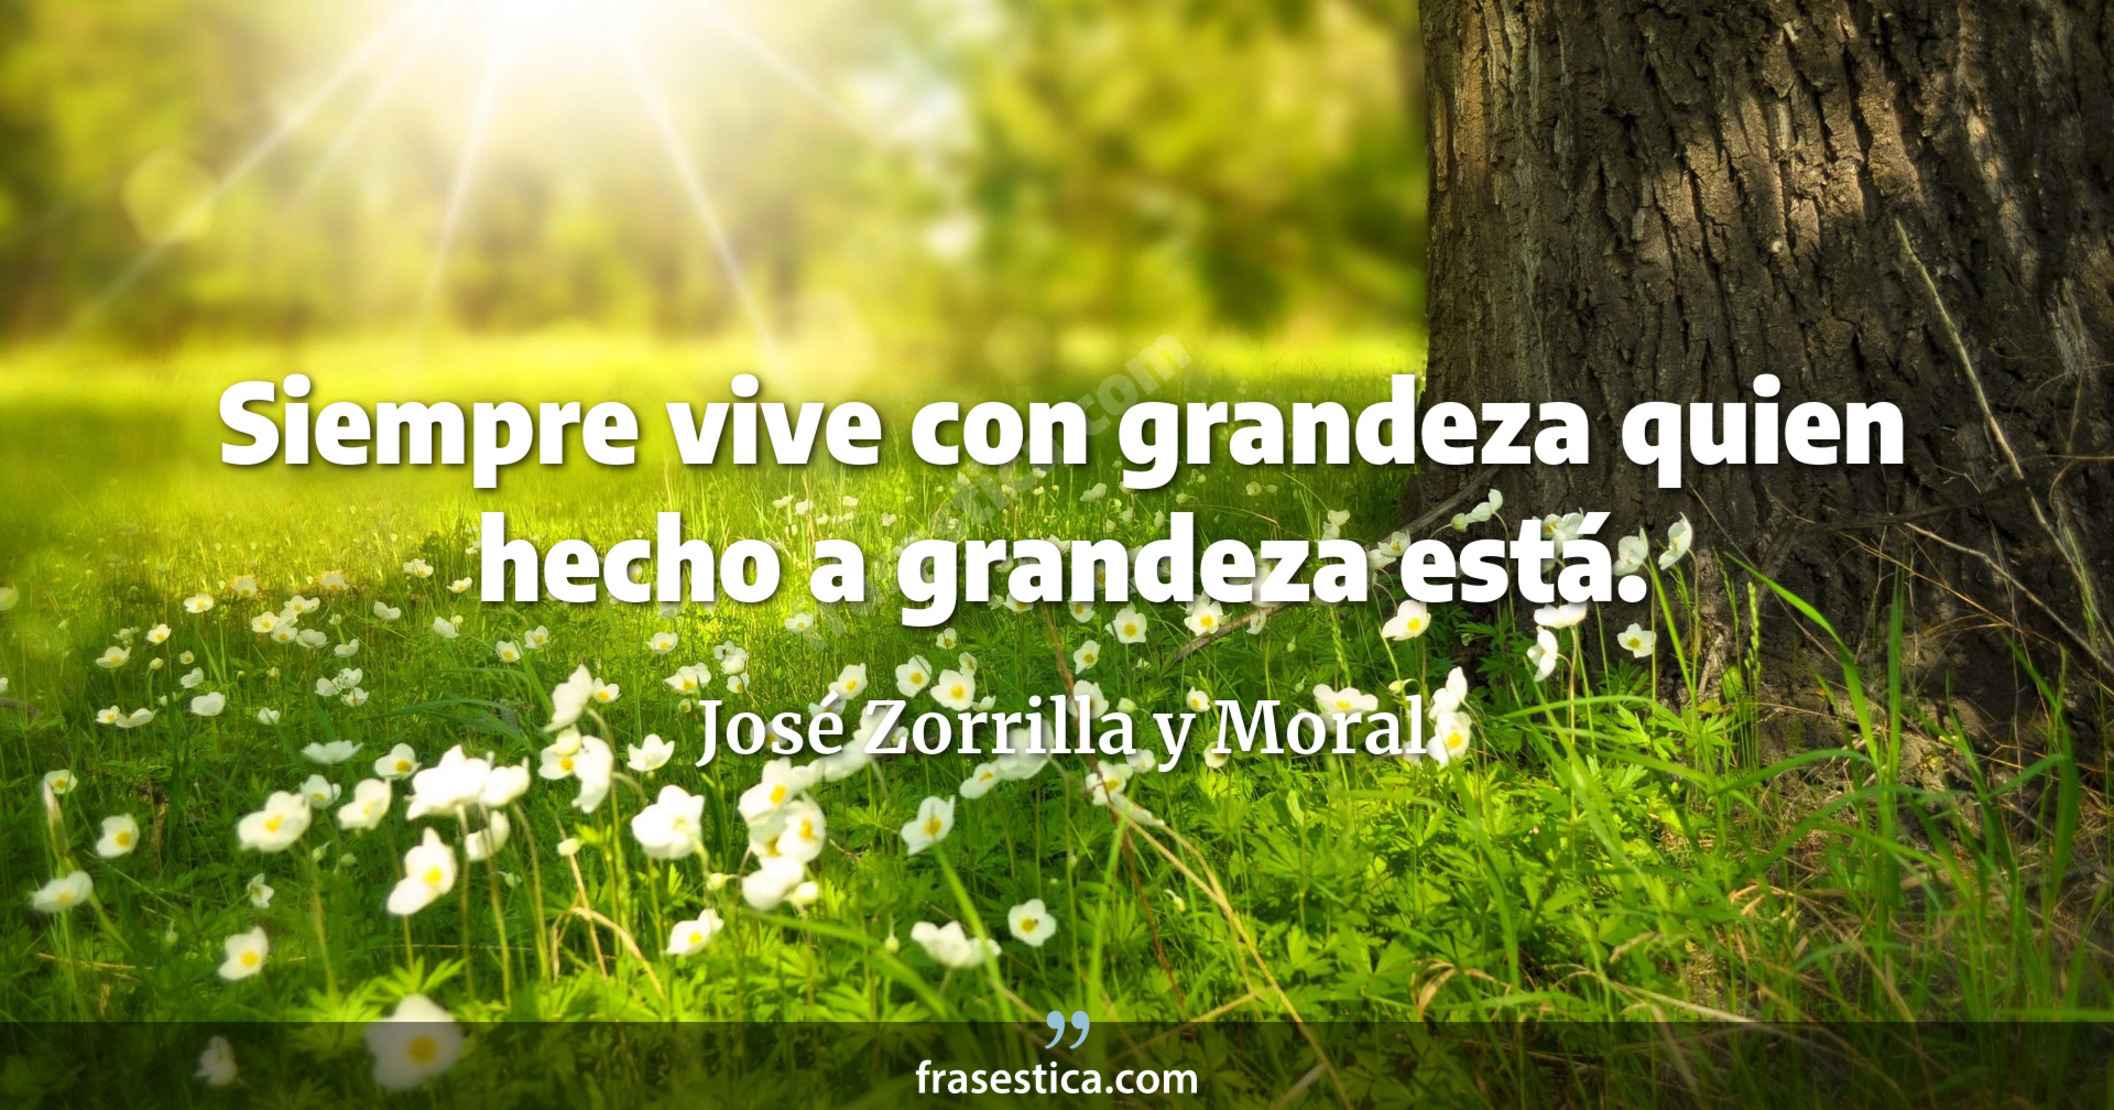 Siempre vive con grandeza quien hecho a grandeza está. - José Zorrilla y Moral